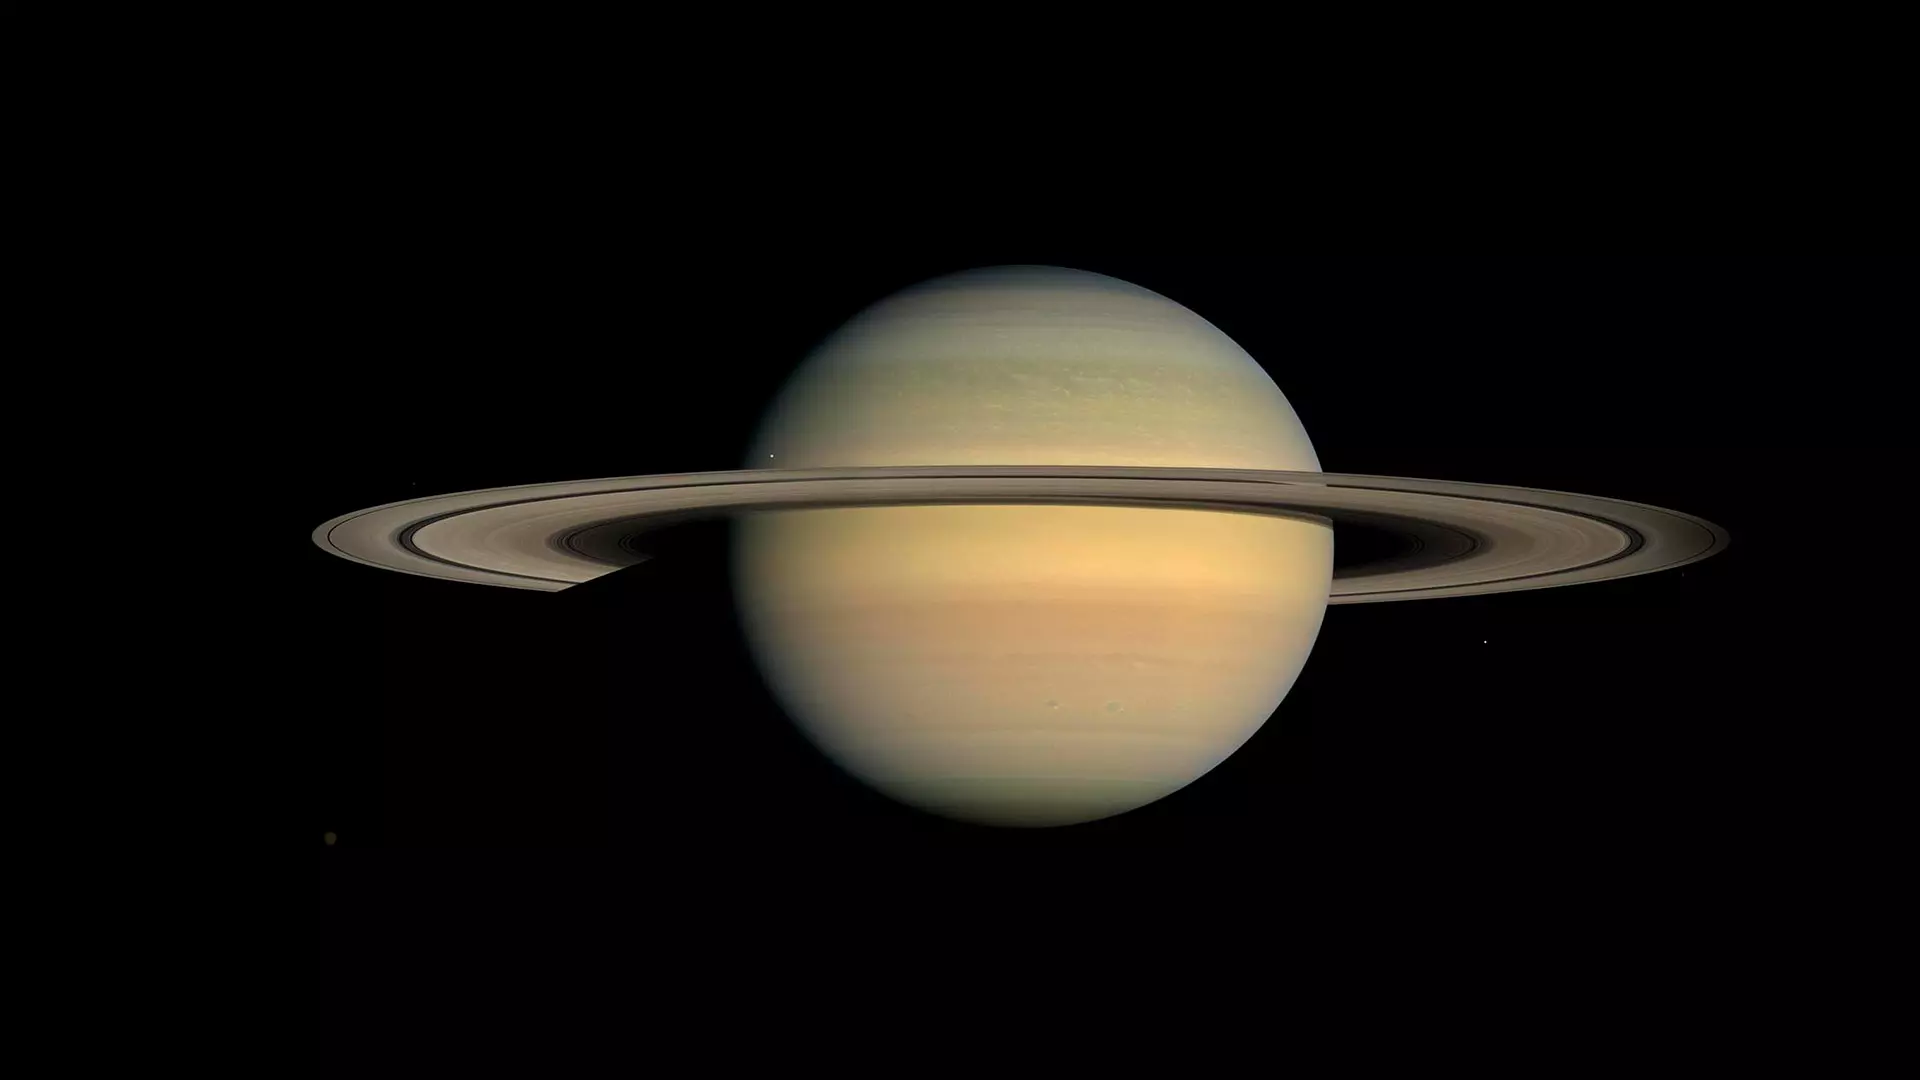 Saturno… cuatro años después (2008). Imagen tomada por la misión Cassini-Huygens, un proyecto conjunto de la NASA, la Agencia Espacial Europea y la Agencia Espacial Italiana.